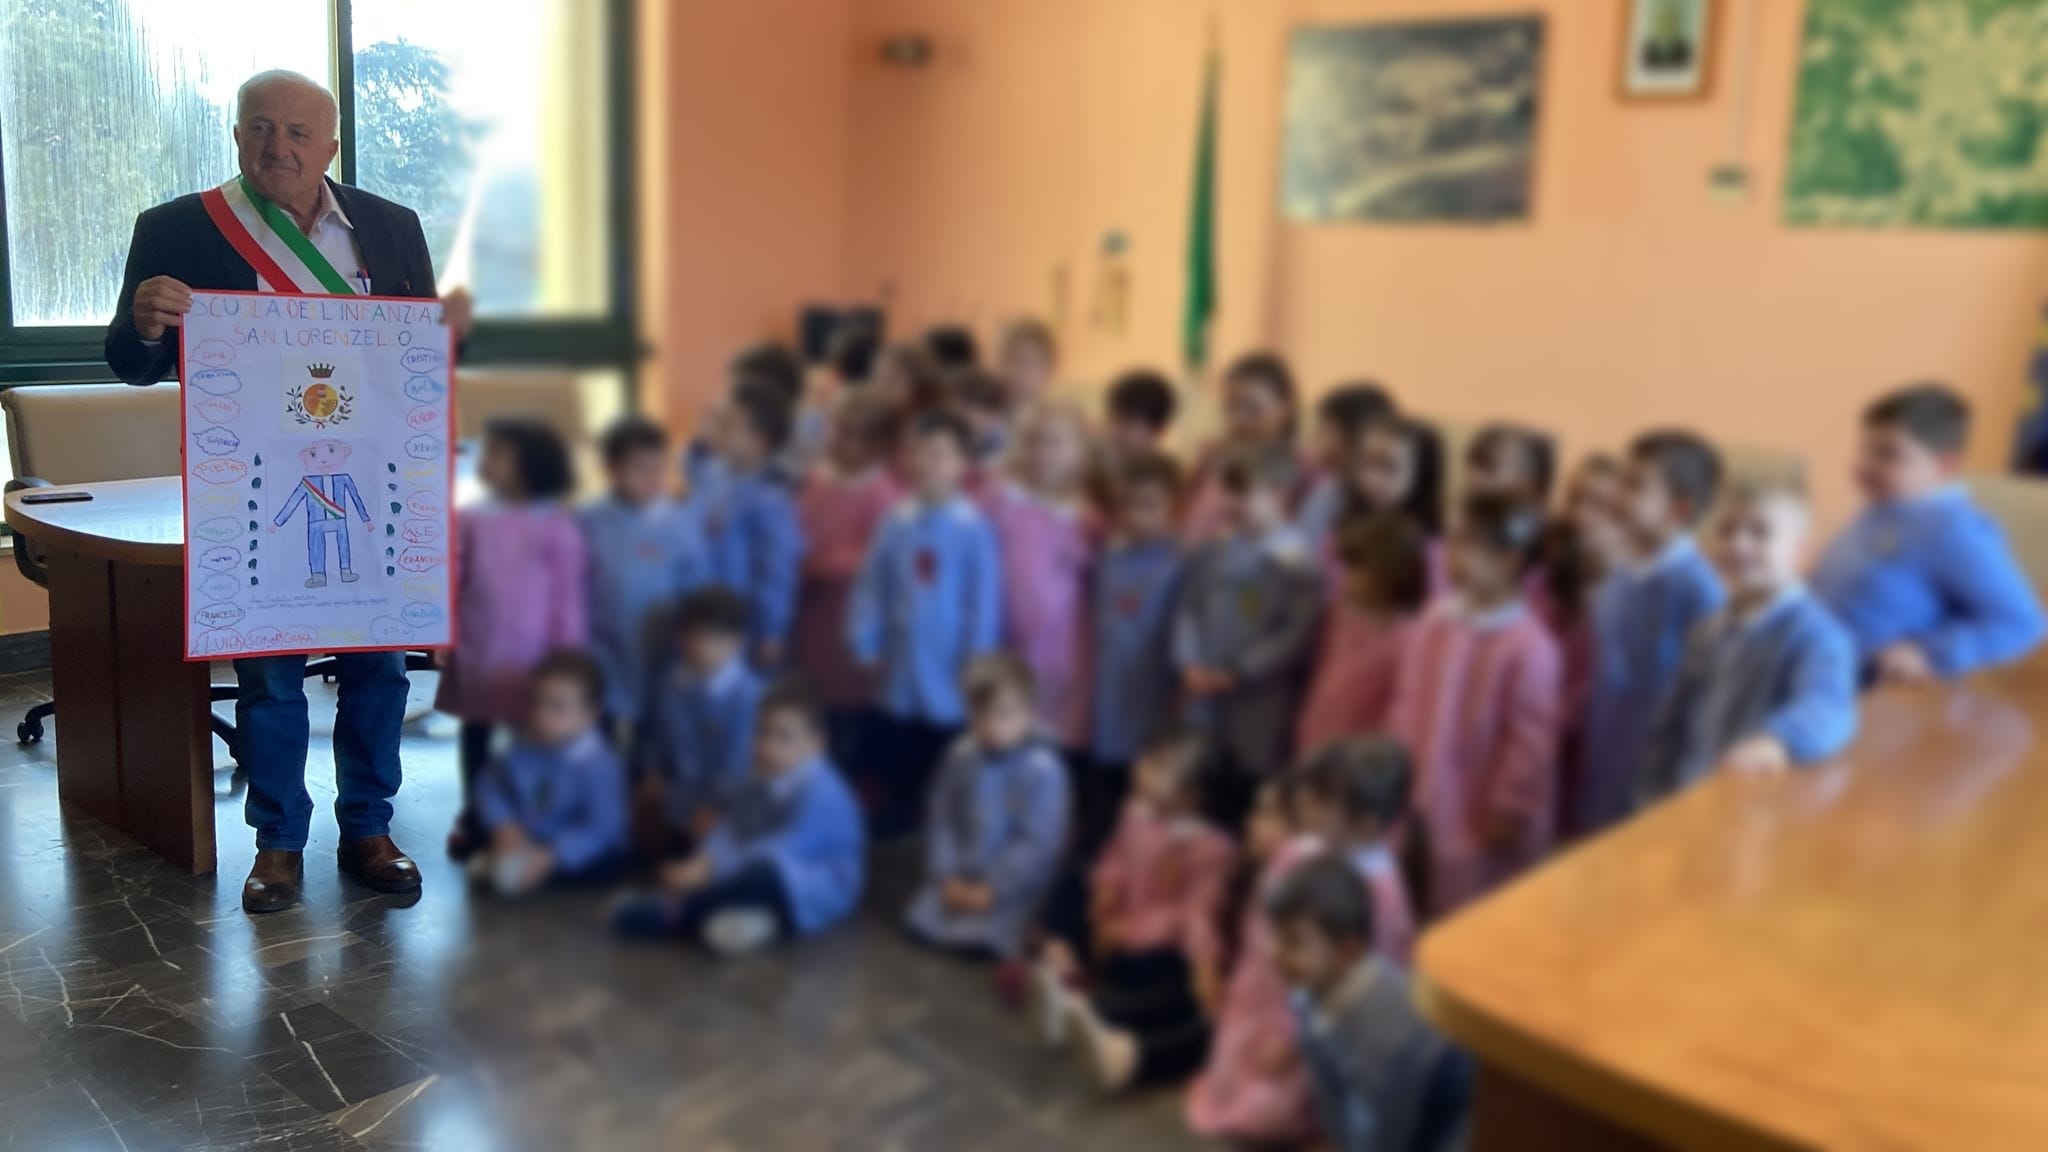 Scuola dell’infanzia San Lorenzello: gli alunni hanno disegnato le proprie Carte d’identità poi timbrate e firmate dal sindaco Antimo Lavorgna